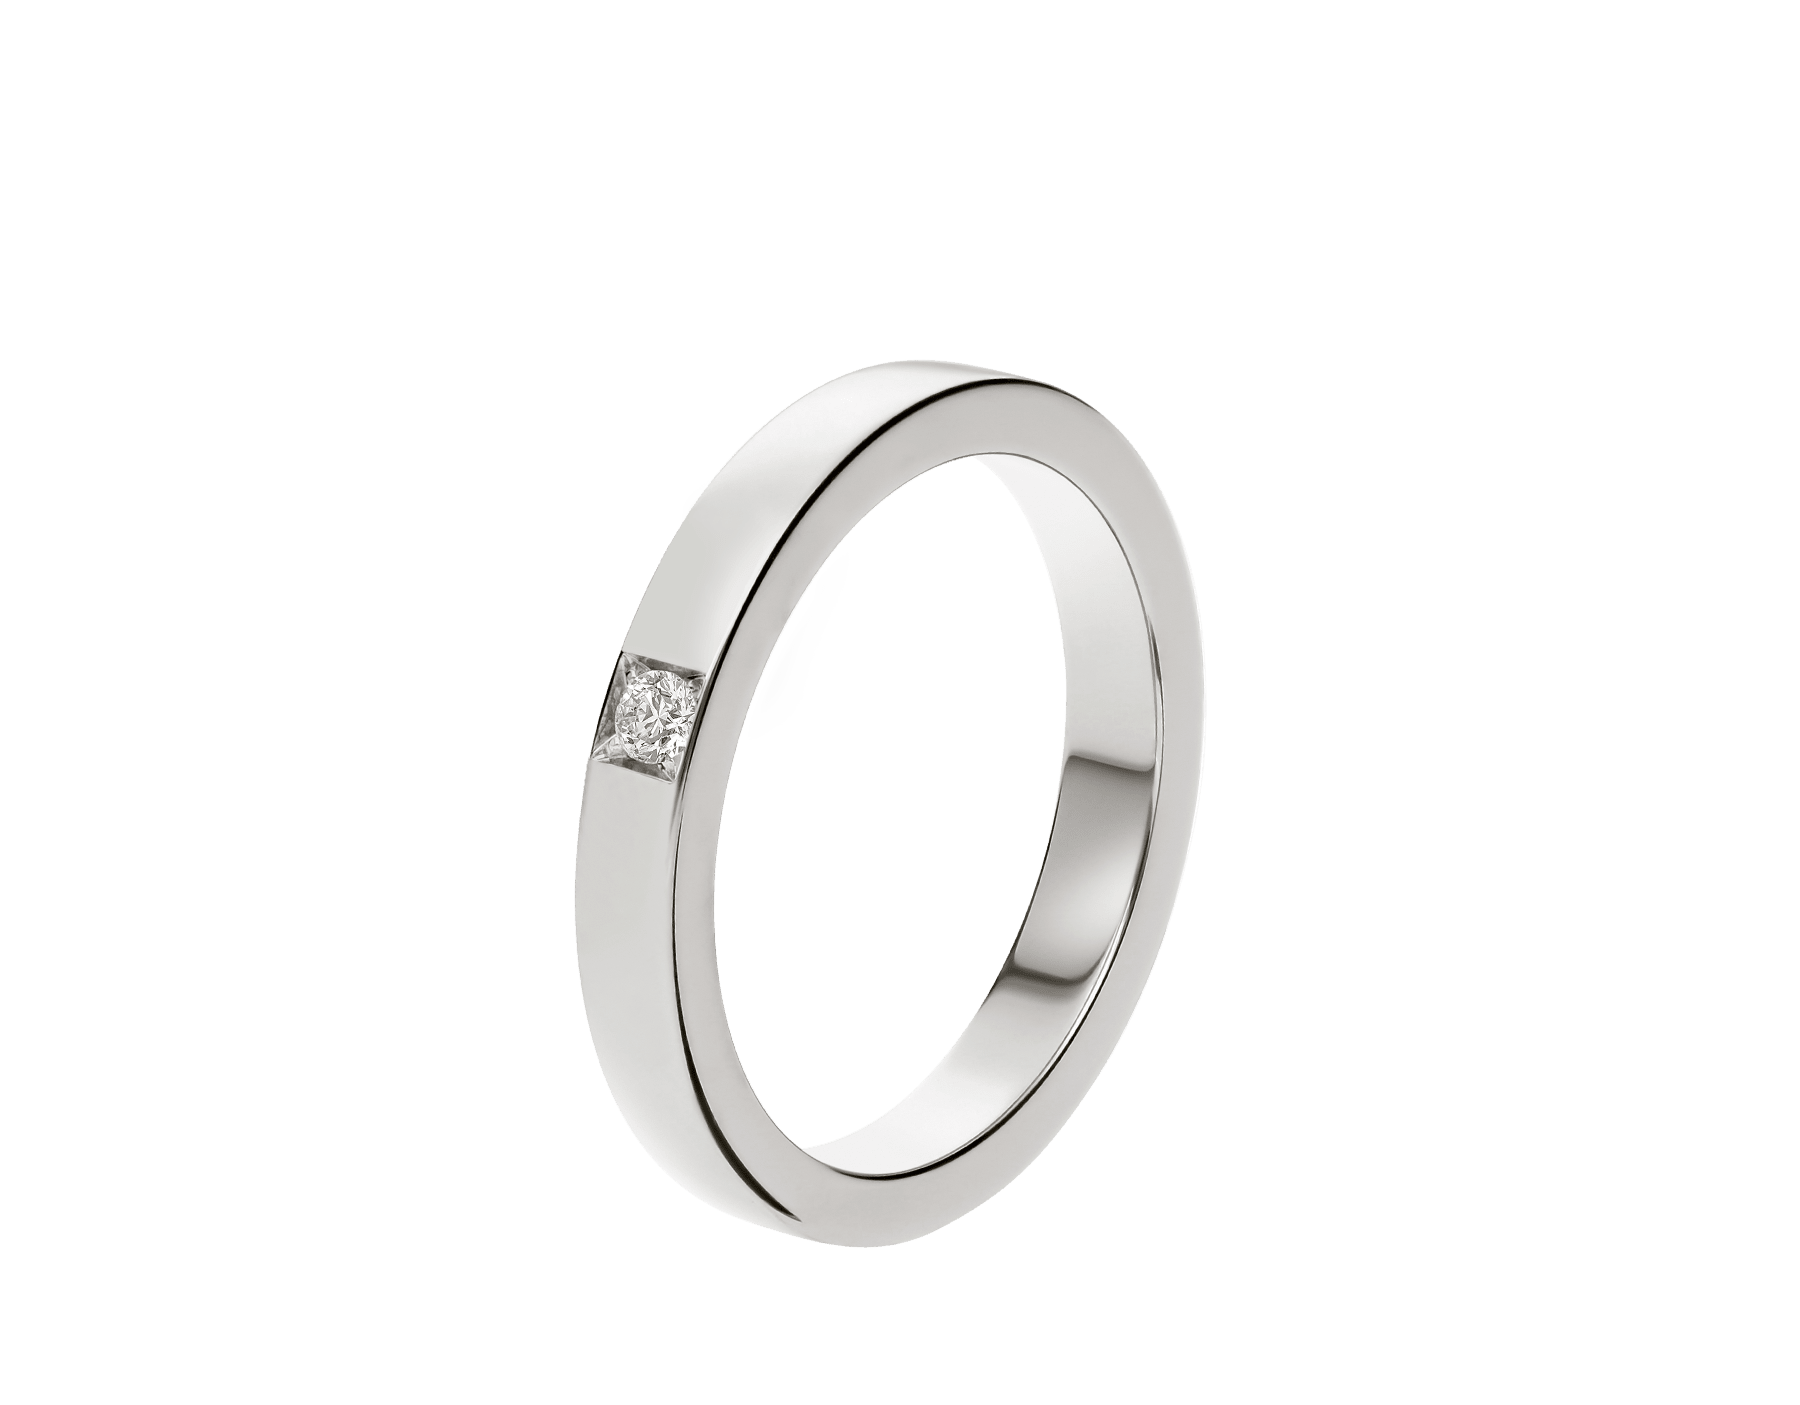 Marryme Wedding Ring 341729 Bvlgari